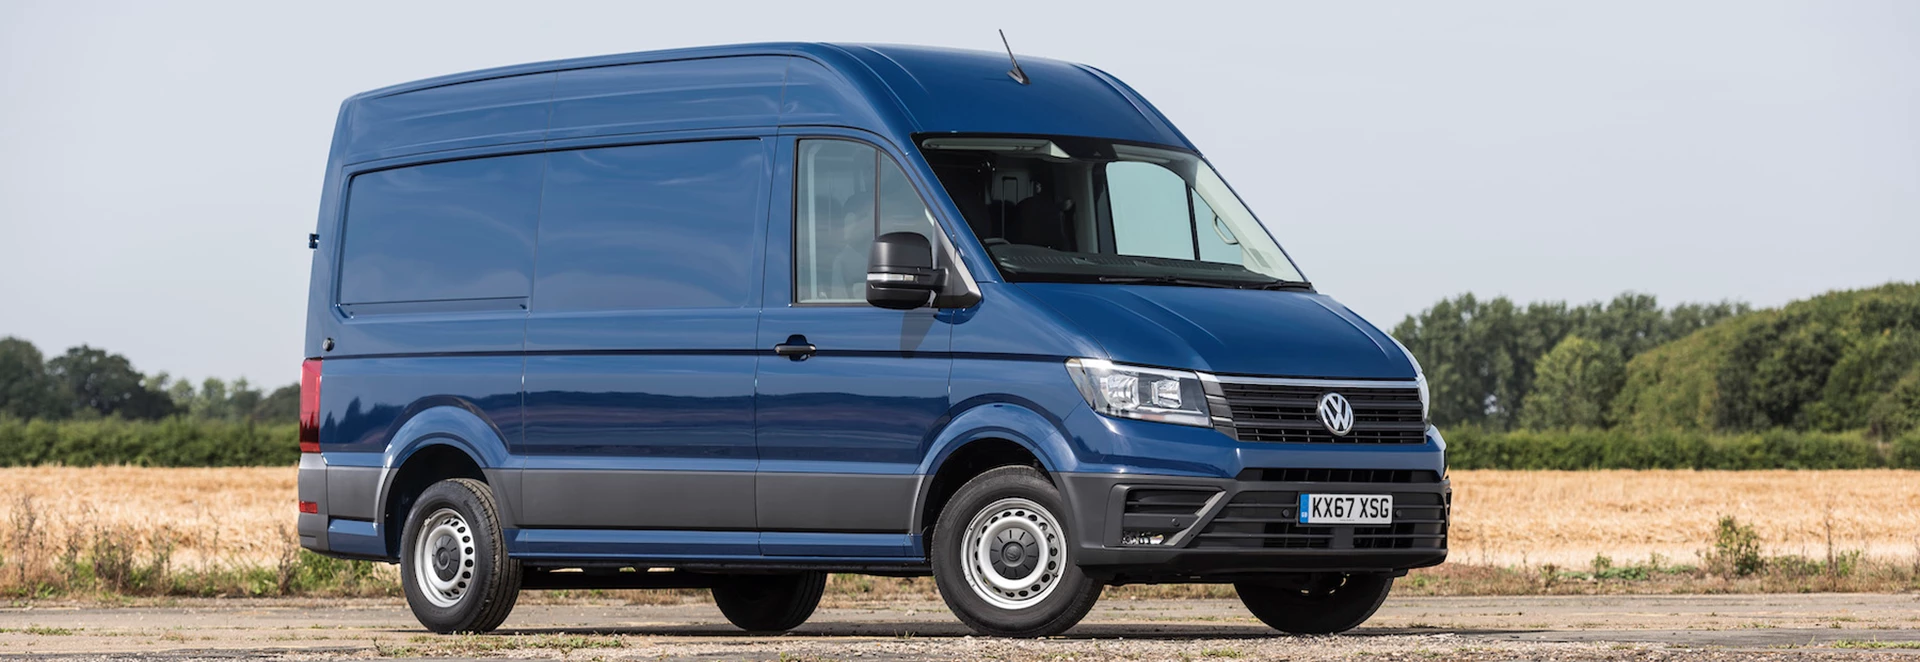 5 best large vans on sale in 2020